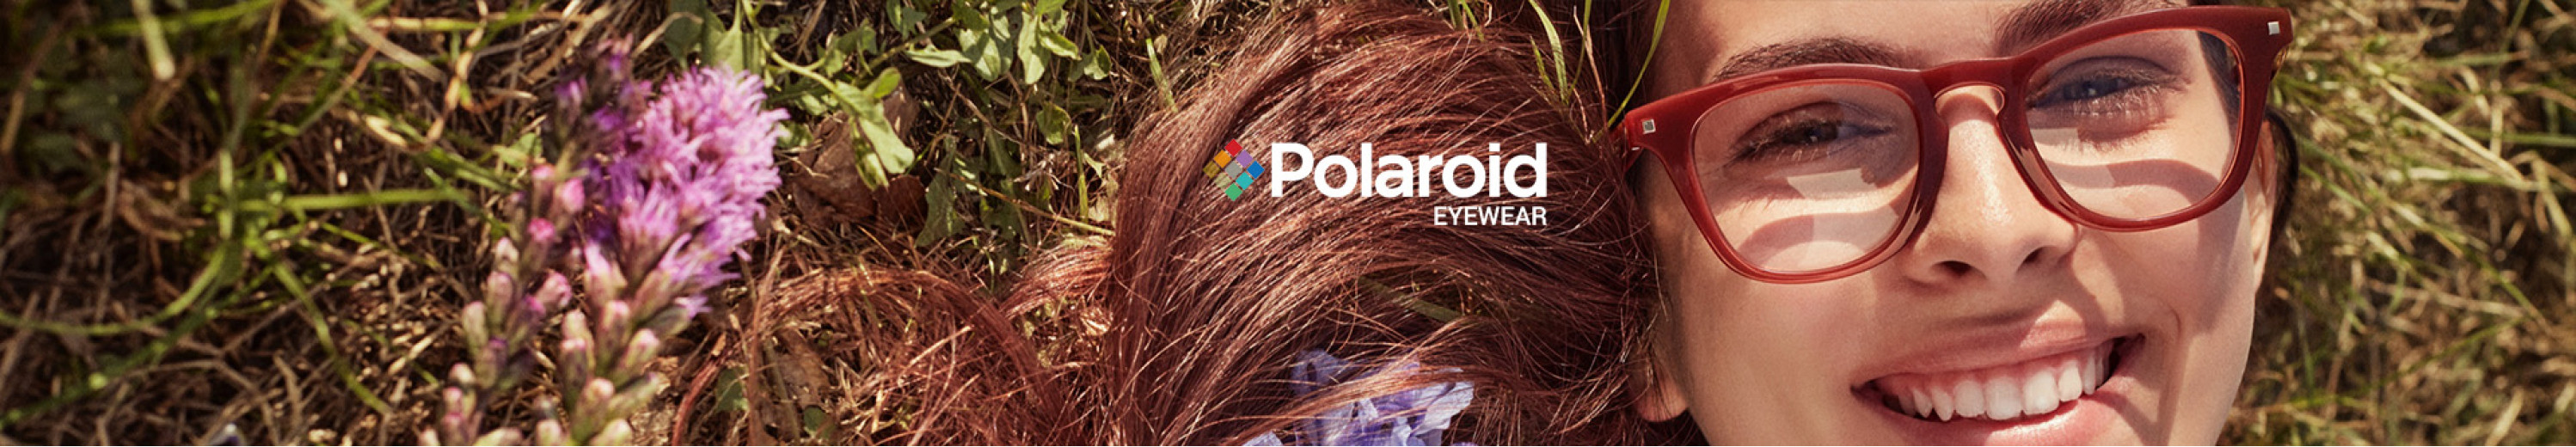 Polaroid Sustainable Eyewear Collection